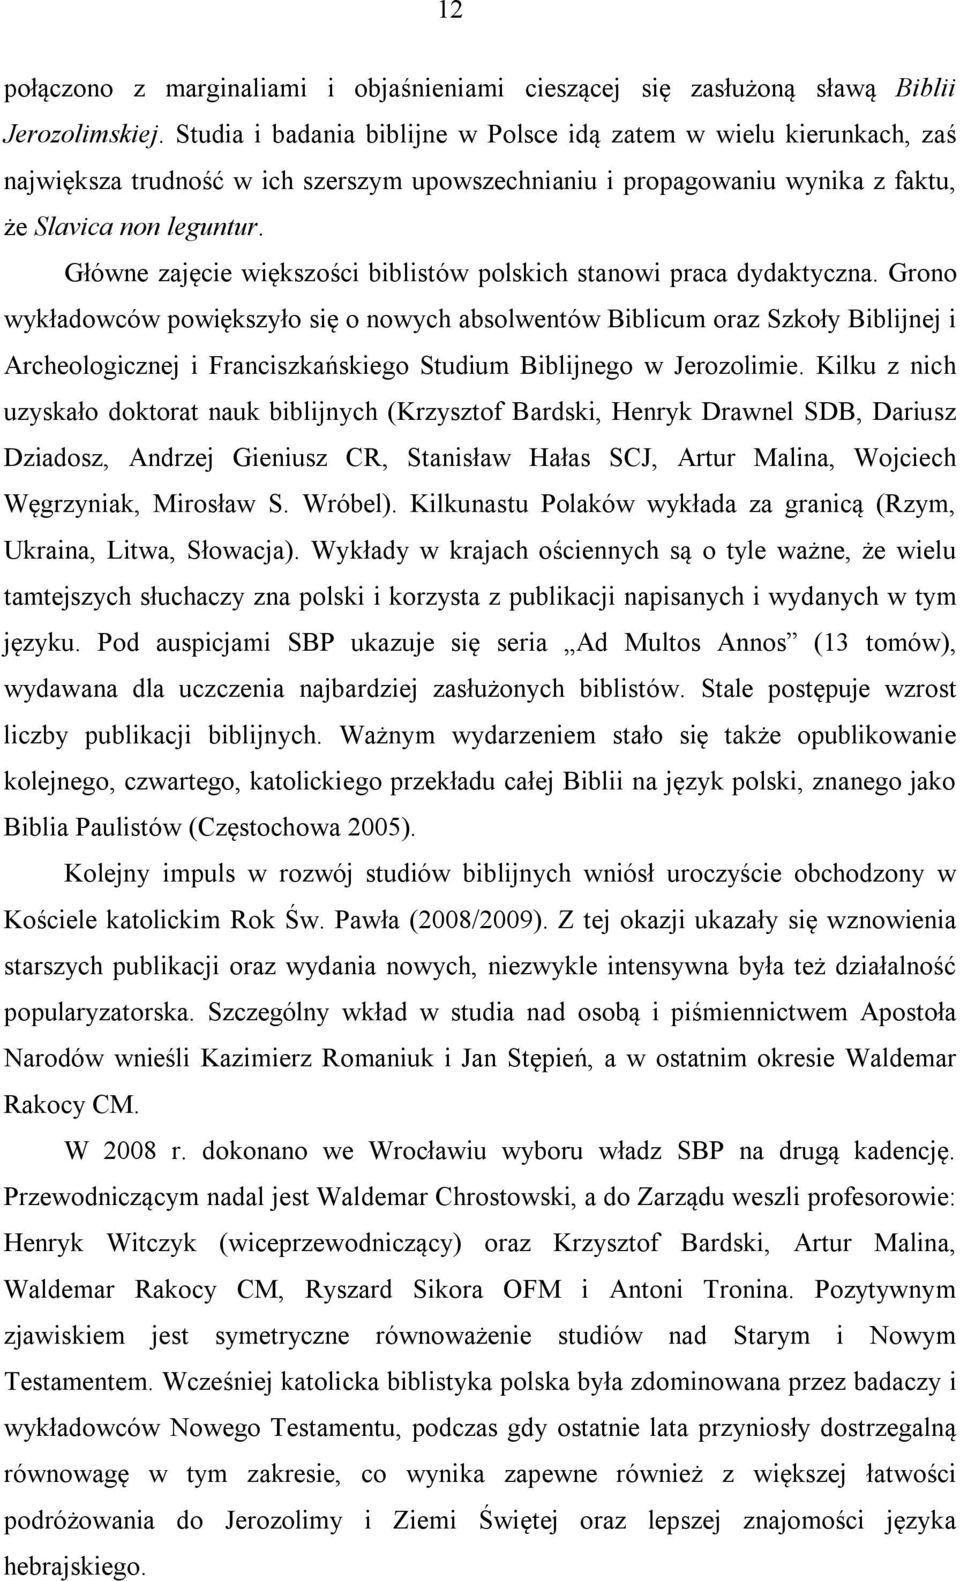 Główne zajęcie większości biblistów polskich stanowi praca dydaktyczna.